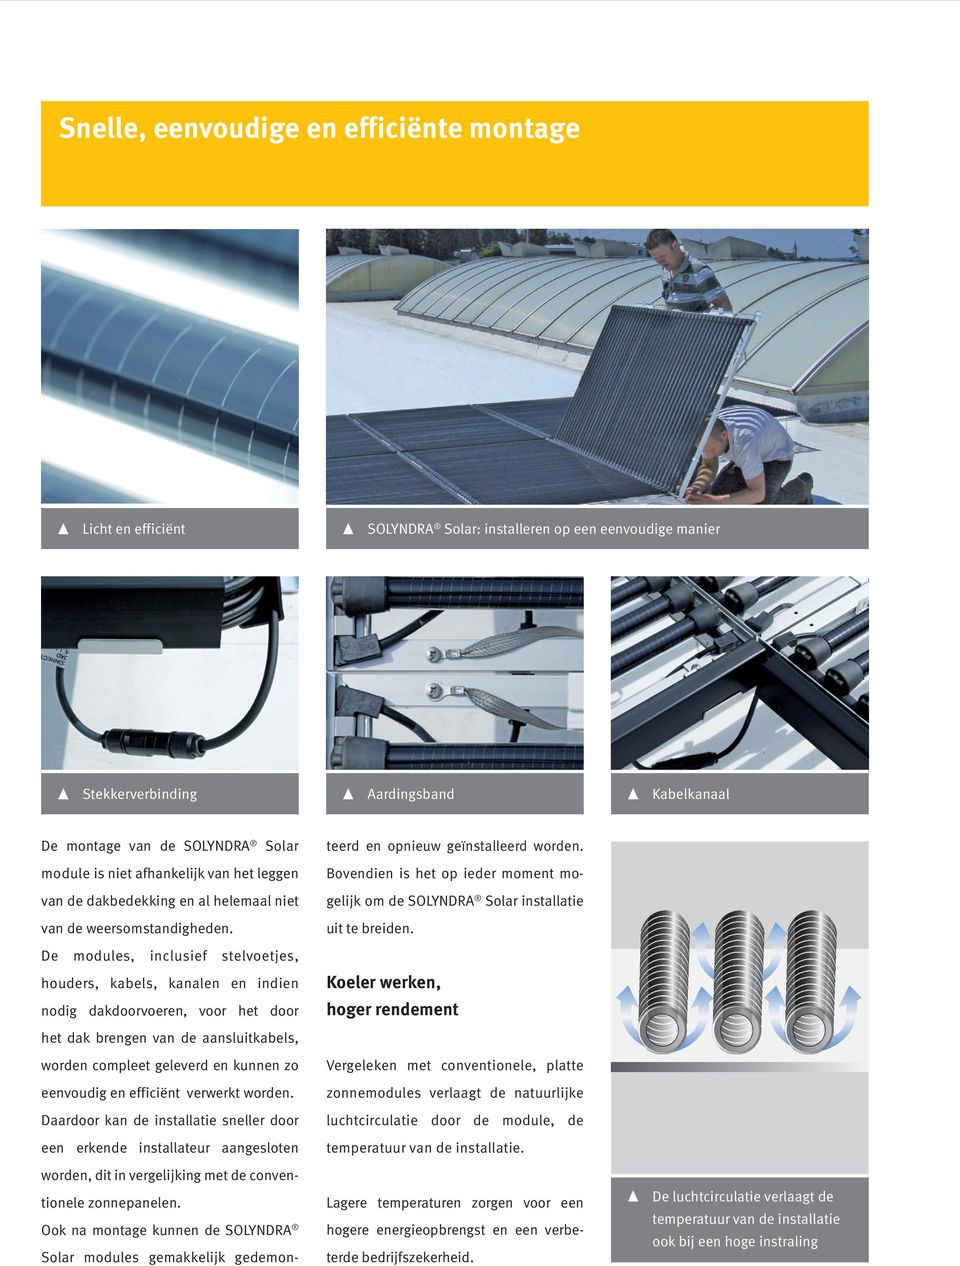 module is niet afhankelijk van het leggen Bovendien is het op ieder moment mo- van de dakbedekking en al helemaal niet gelijk om de SOLYNDRA Solar installatie van de weersomstandigheden.